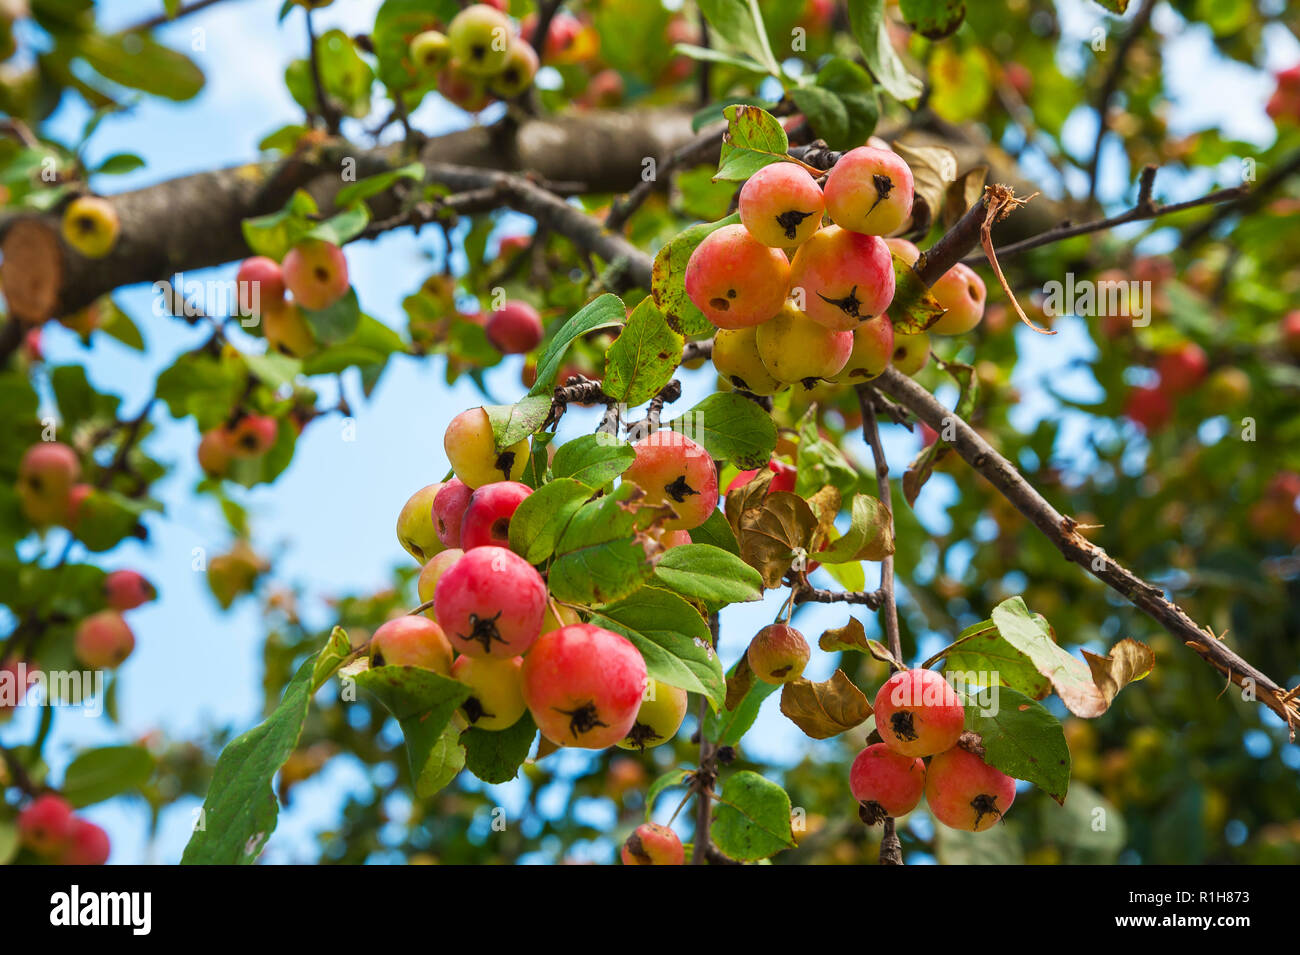 European Wild Pear (Pyrus pyraster) on tree, Bavaria, Germany Stock Photo